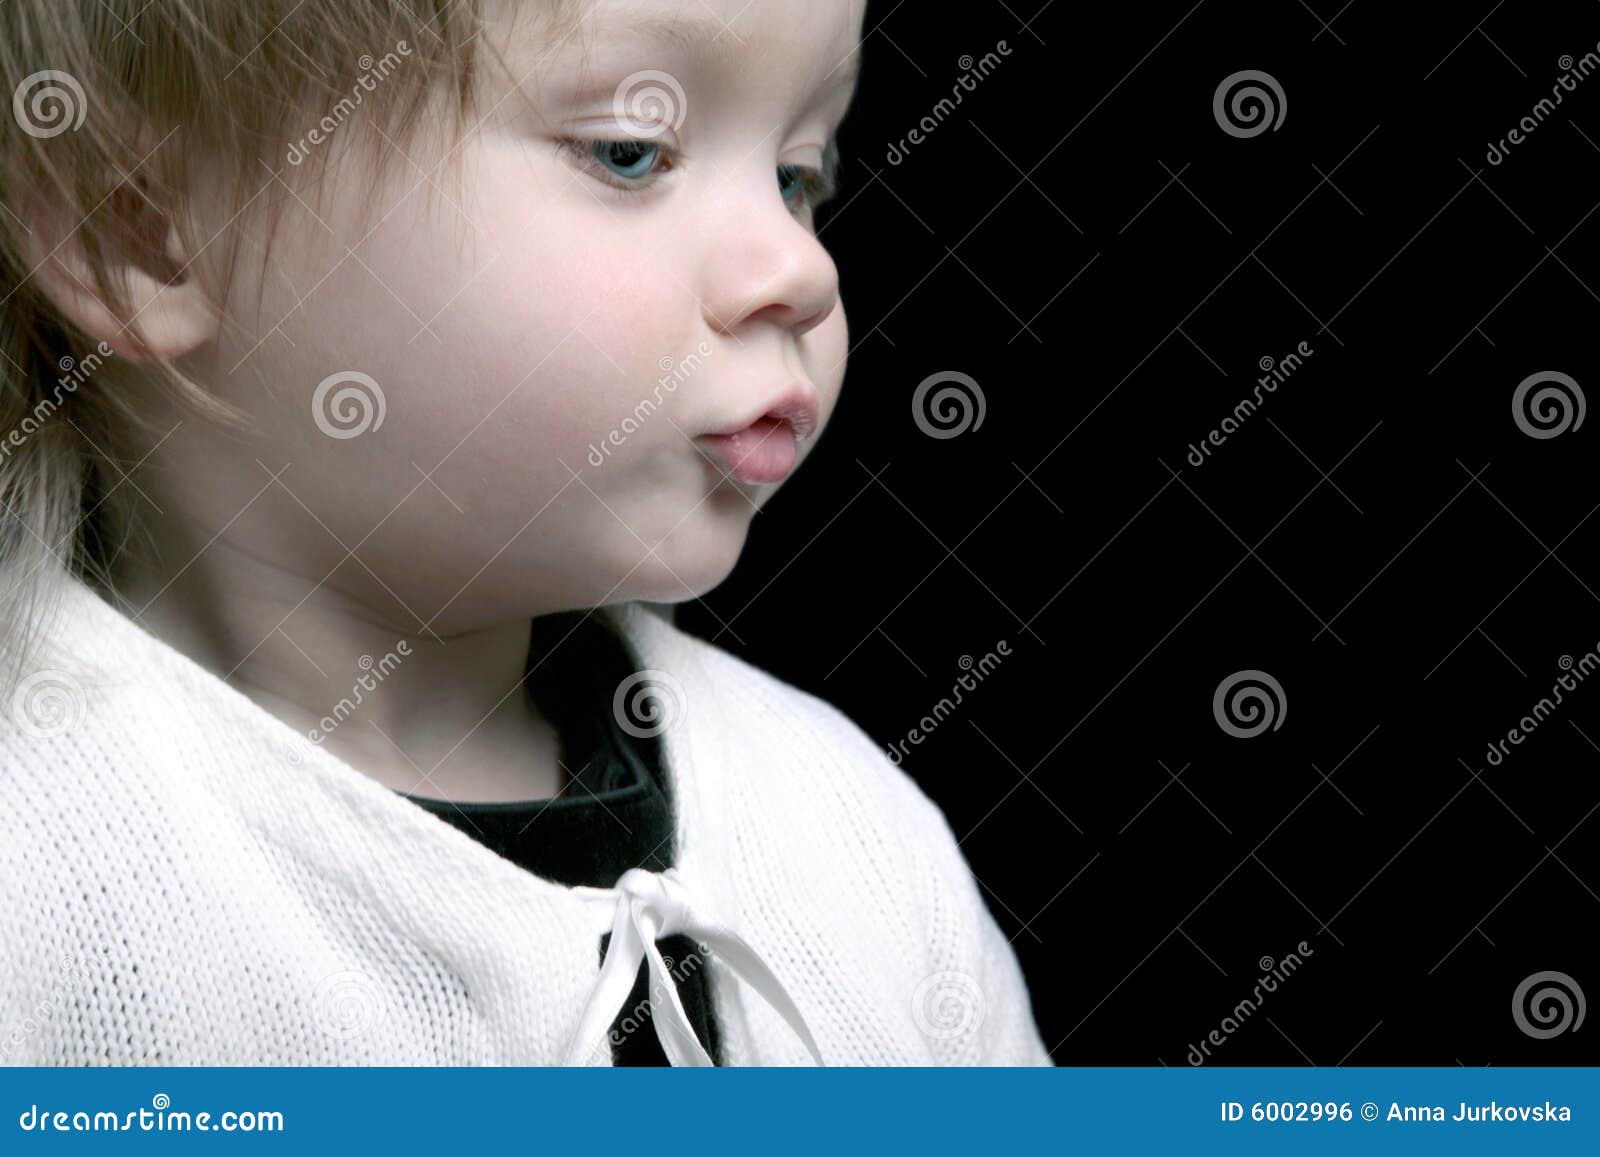 Cute Baby Profile Stock Photo Image Of Joyful Infant 6002996